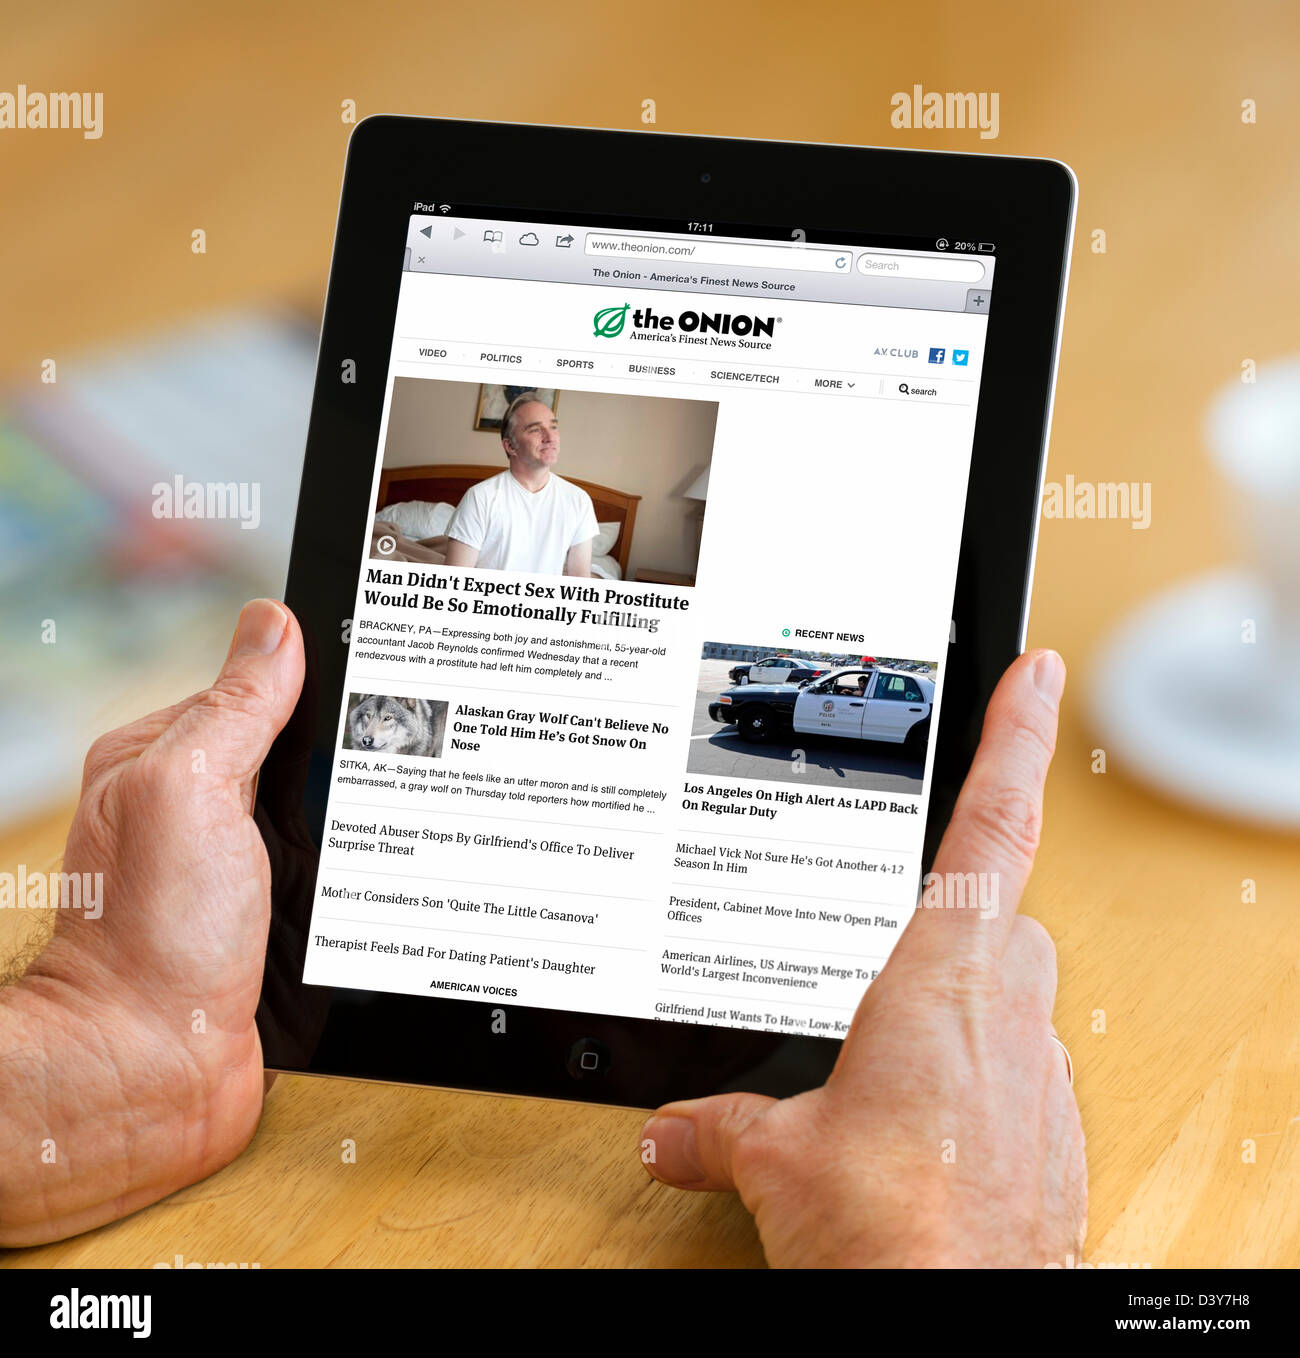 Le site satirique, l'oignon, vue sur une 4ème génération d'Apple iPad, USA Banque D'Images